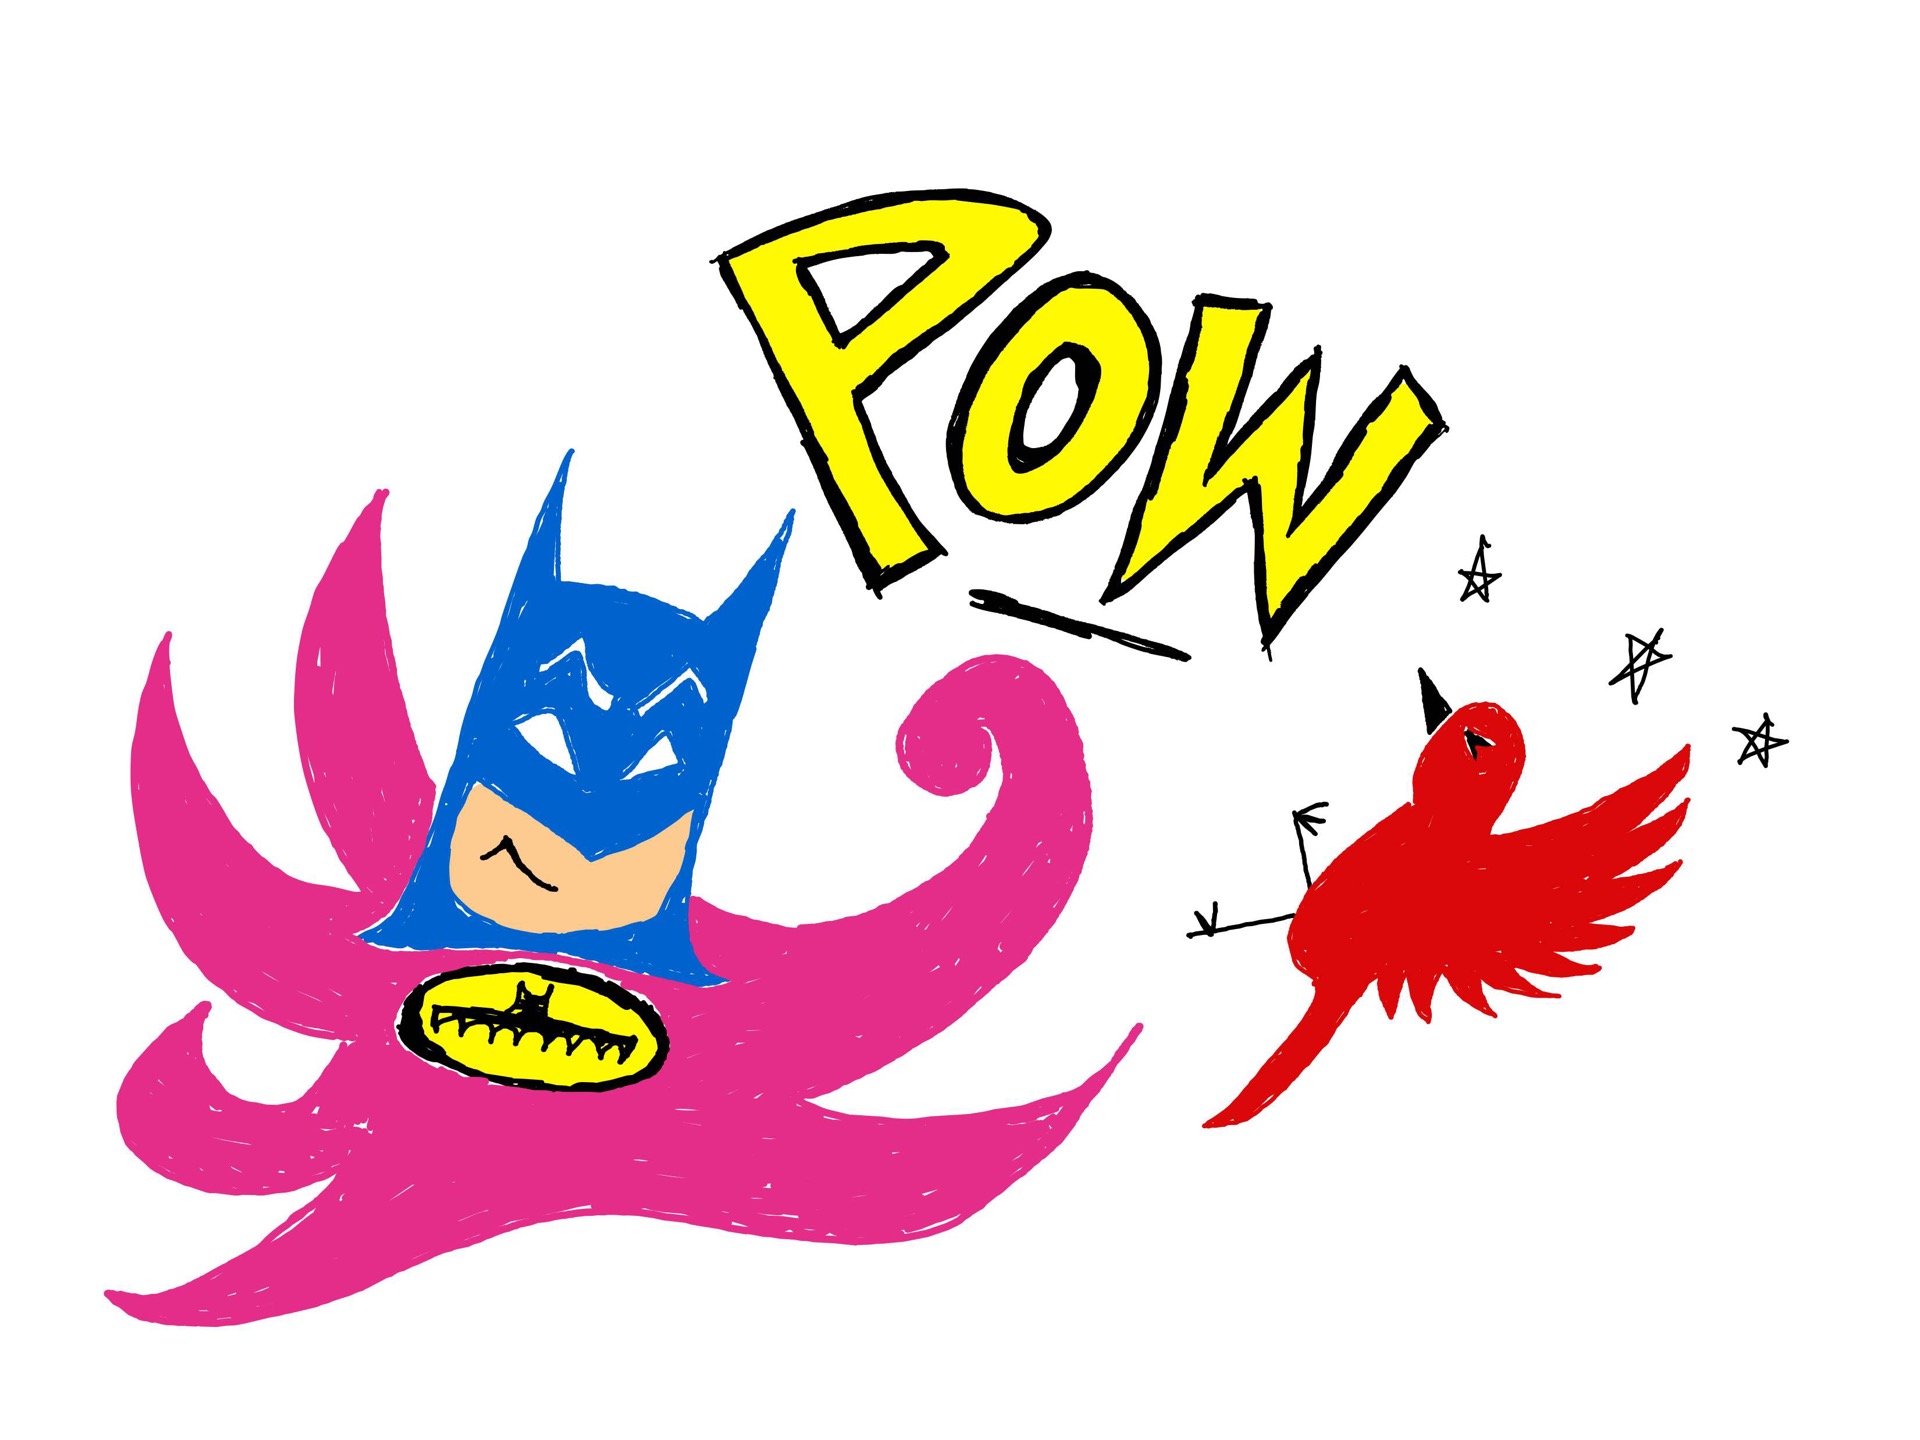 Batman TV Series Decal Sticker - BATMAN-TV-SERIES - Thriftysigns